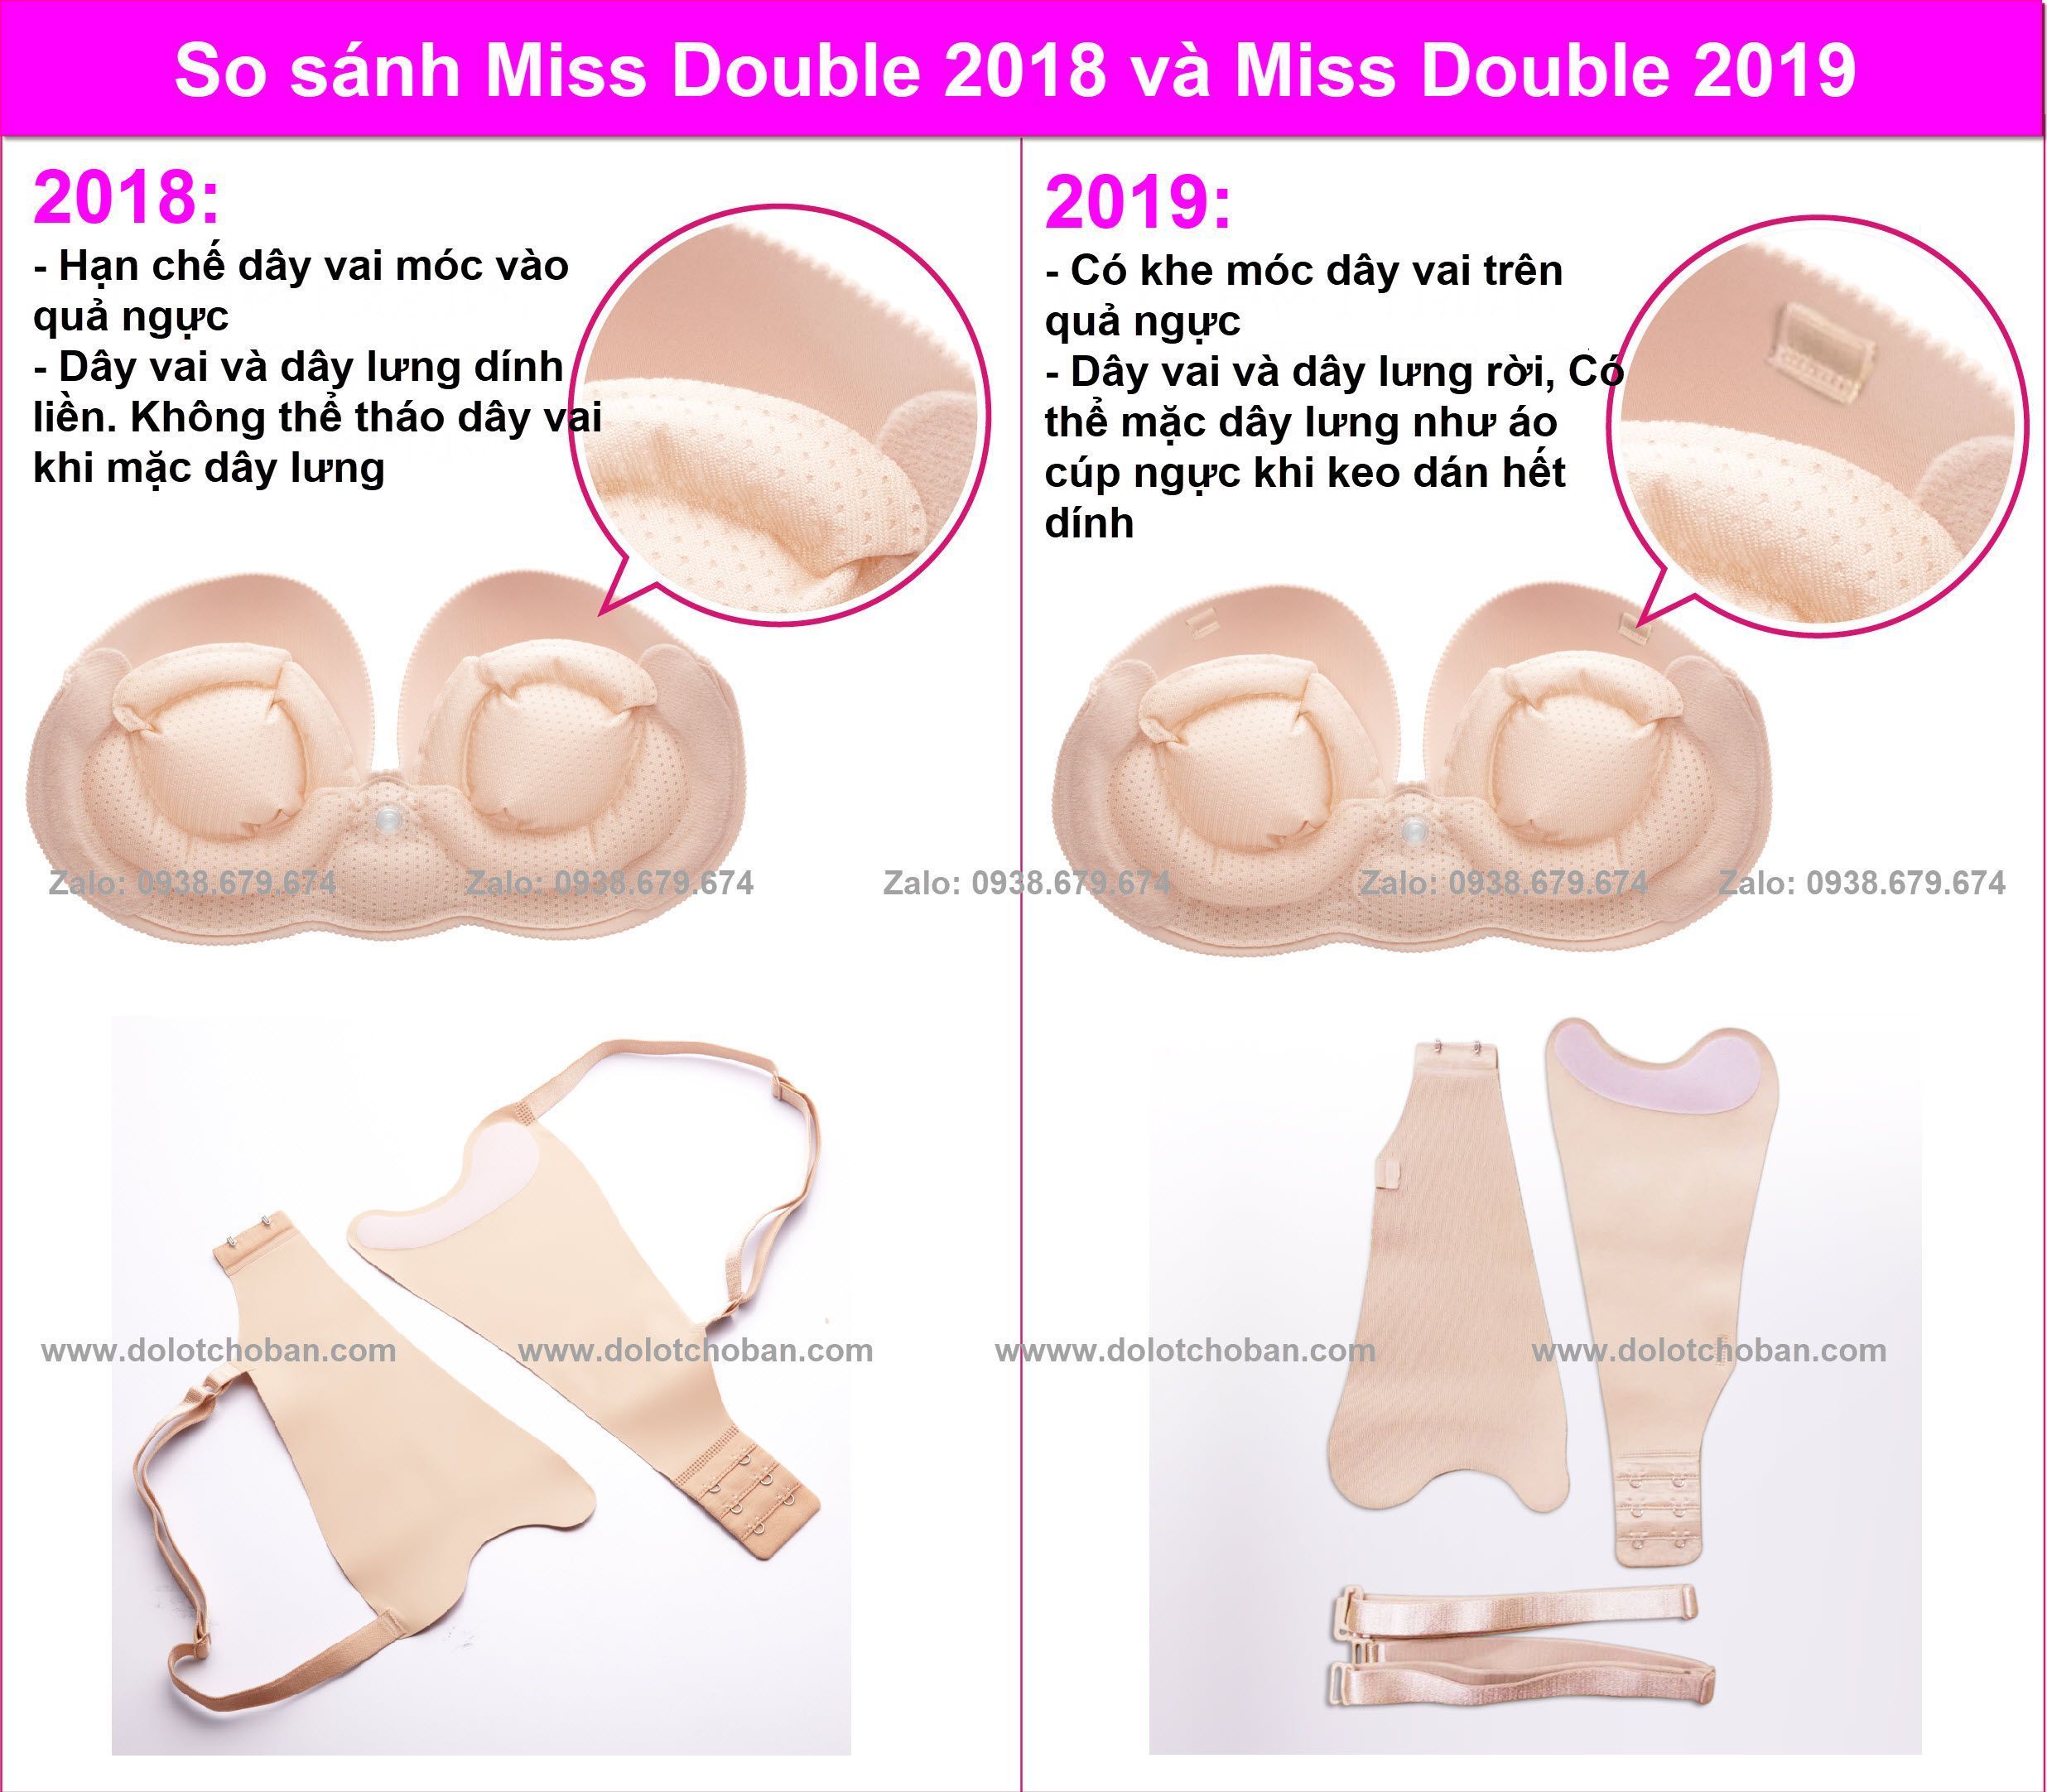 So sánh áo lót bơm hơi Vtyle 2018 và Áo lót bơm hơi Miss Double 2019